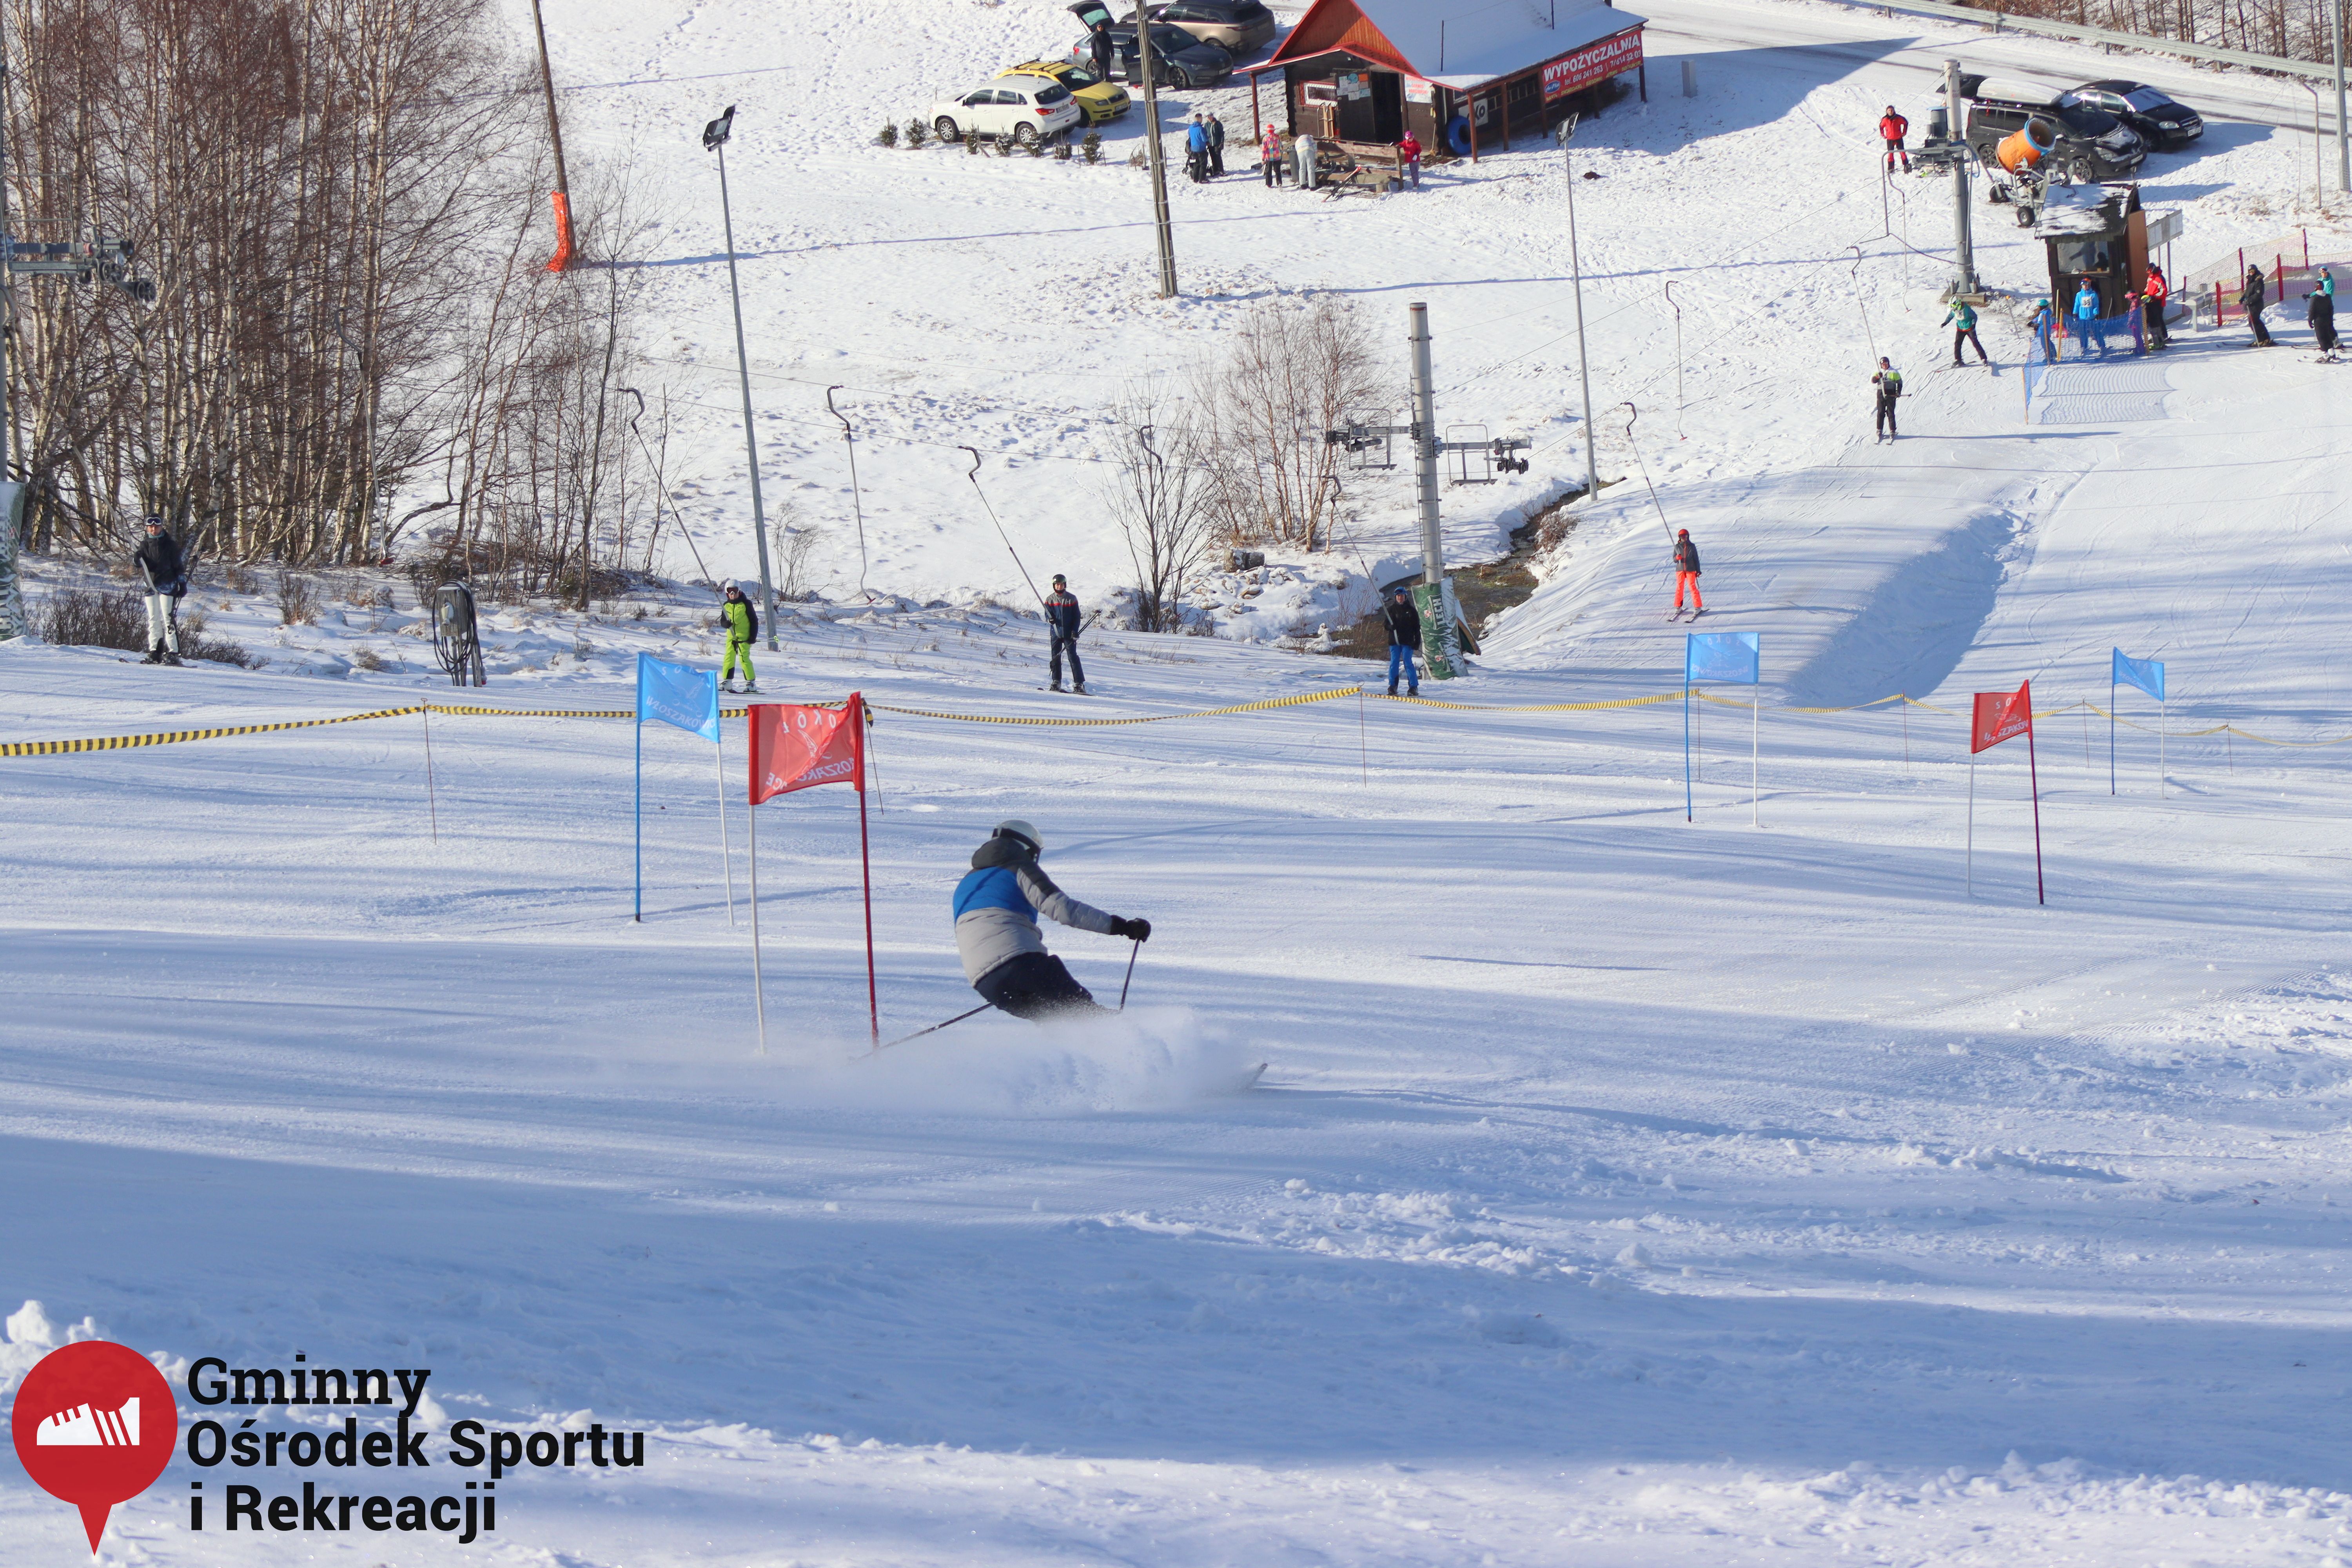 2022.02.12 - 18. Mistrzostwa Gminy Woszakowice w narciarstwie017.jpg - 3,11 MB